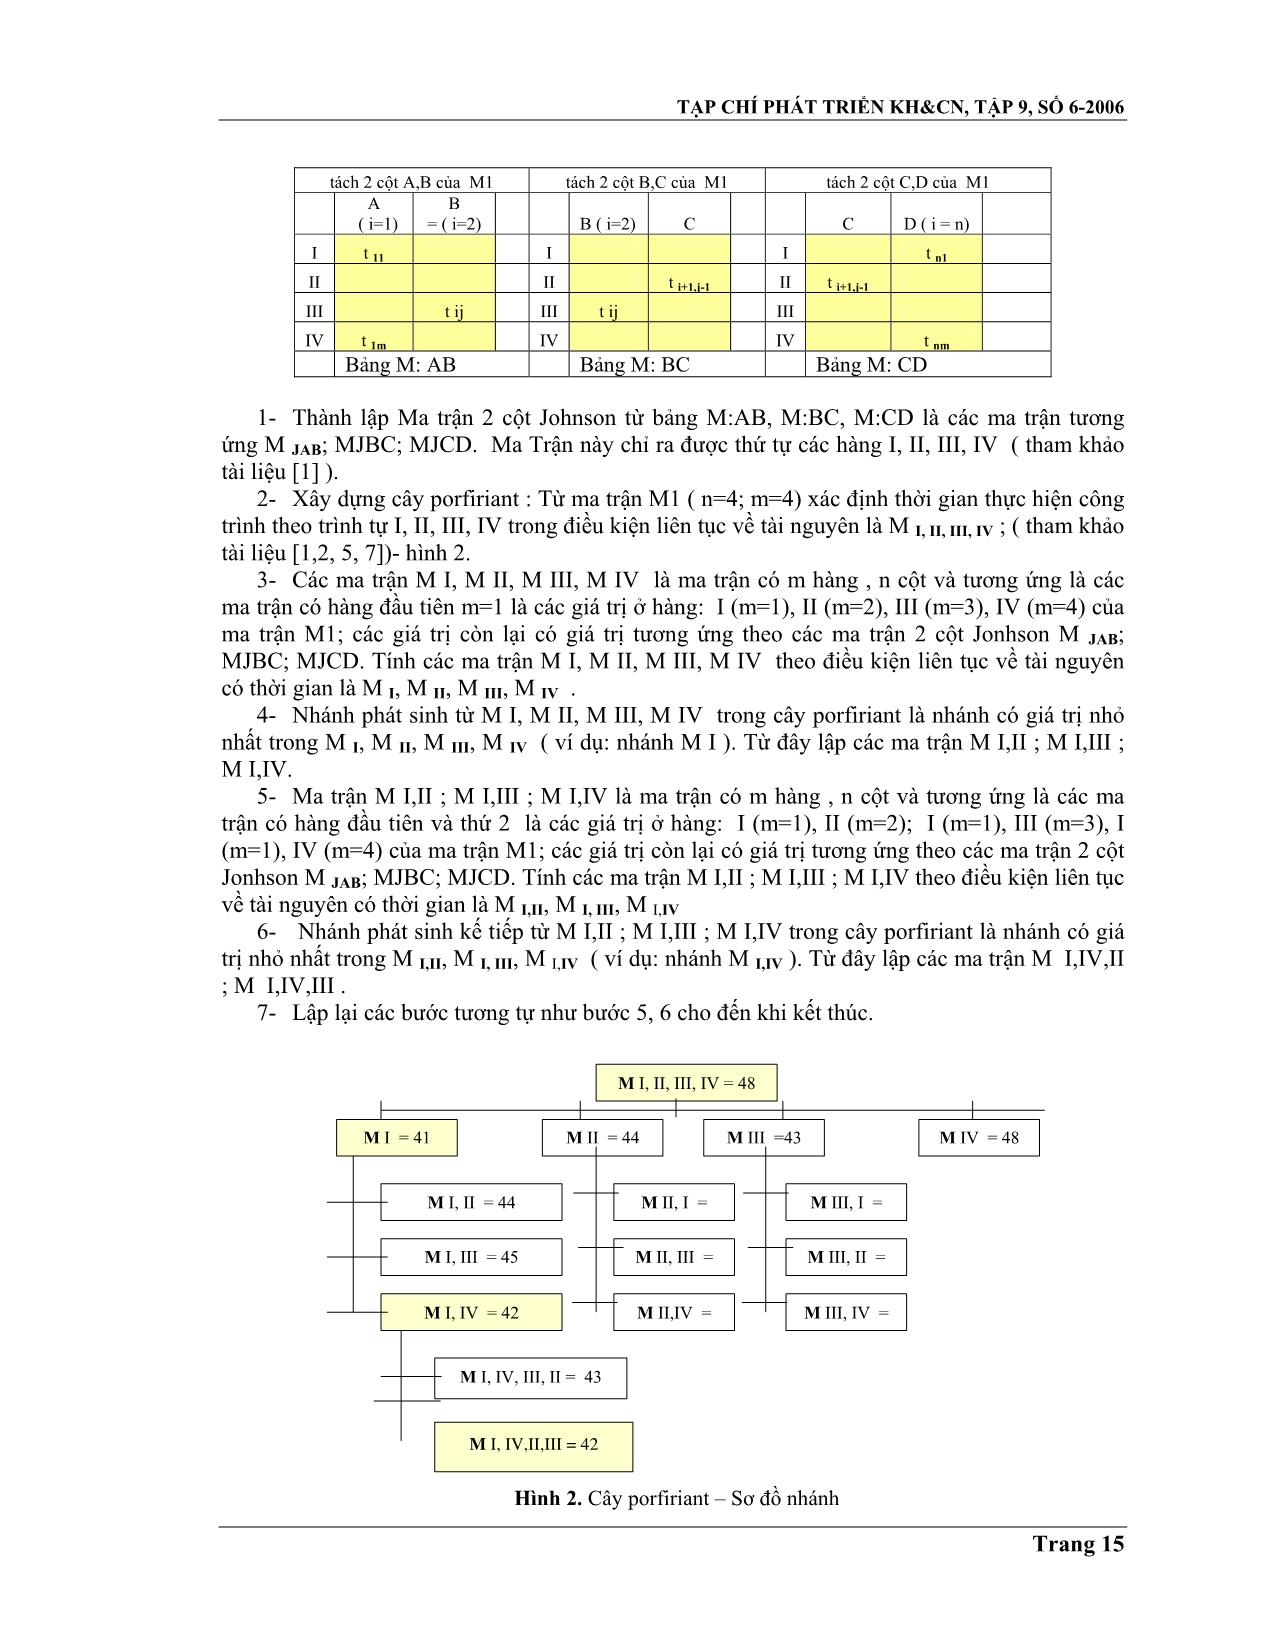 Ứng dụng phương pháp nhánh và biên, lập trình giải bài toán tối ưu về trình tự thi công trang 3